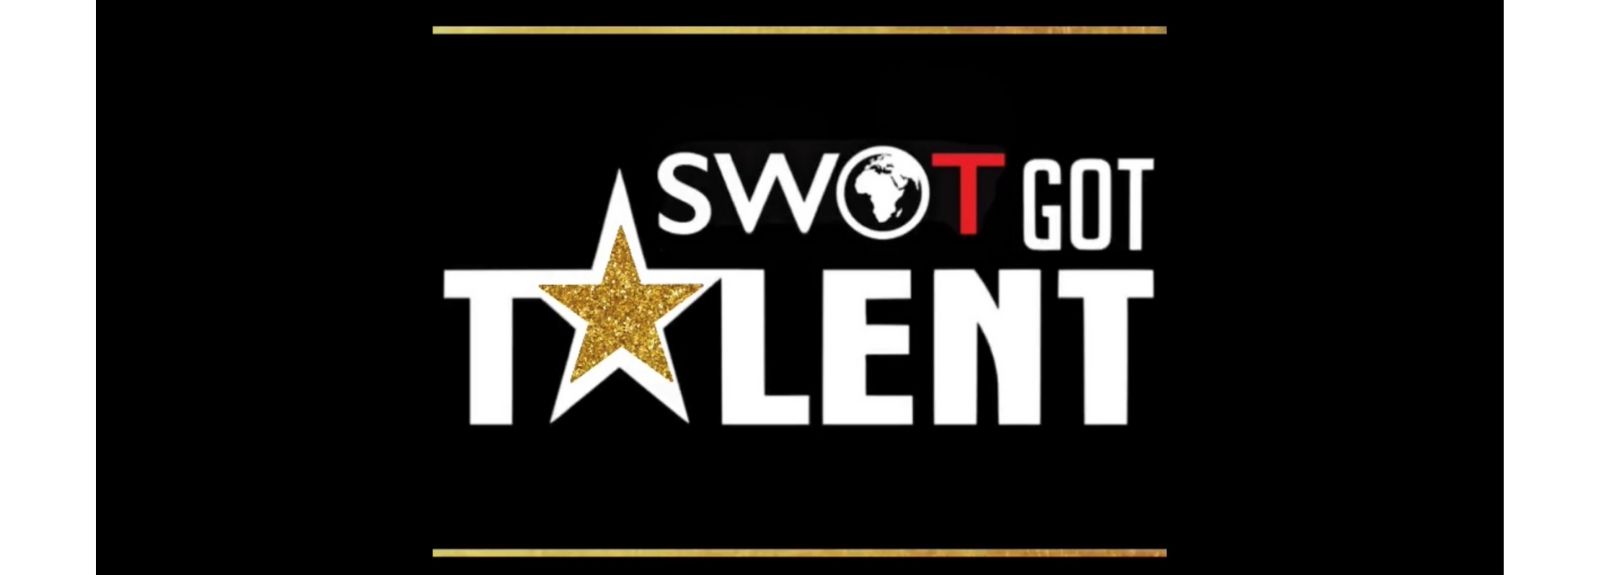 SWOT got talent banner